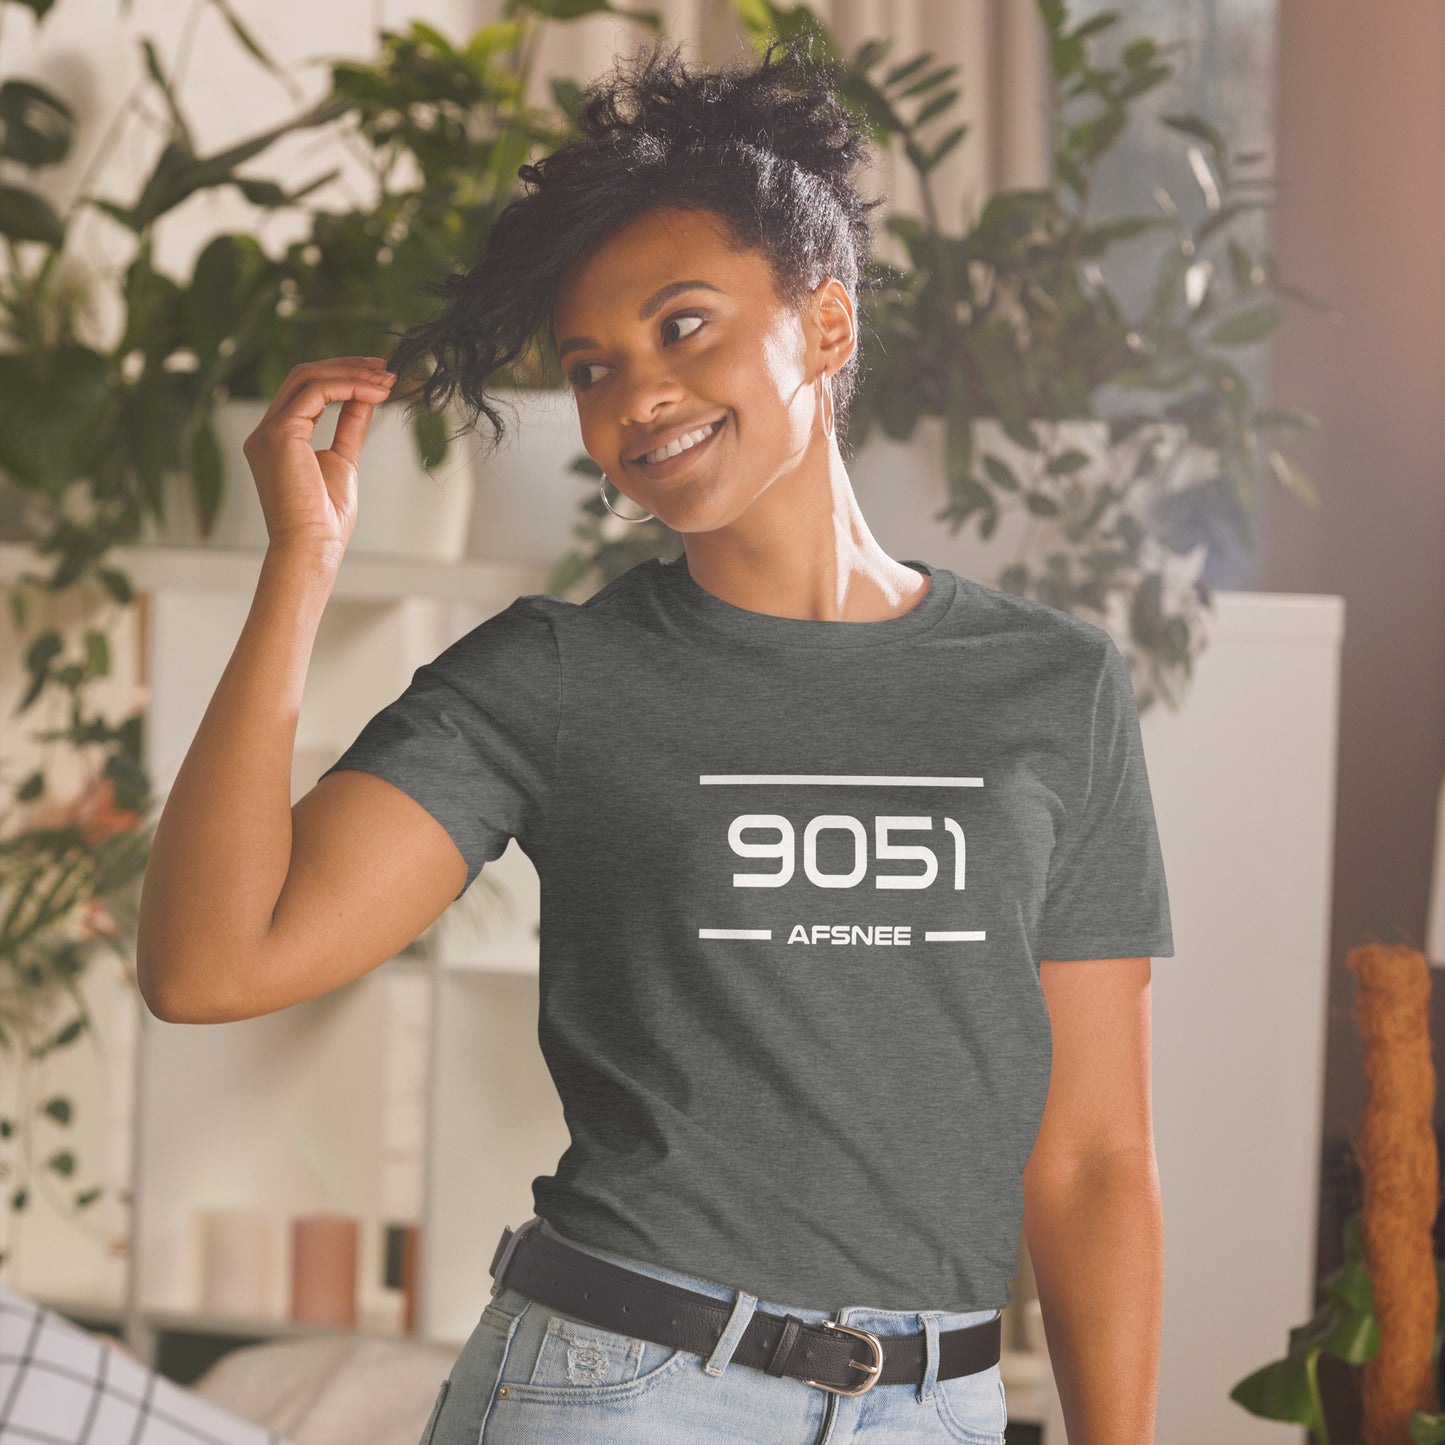 T-Shirt - 9051 - Afsnee